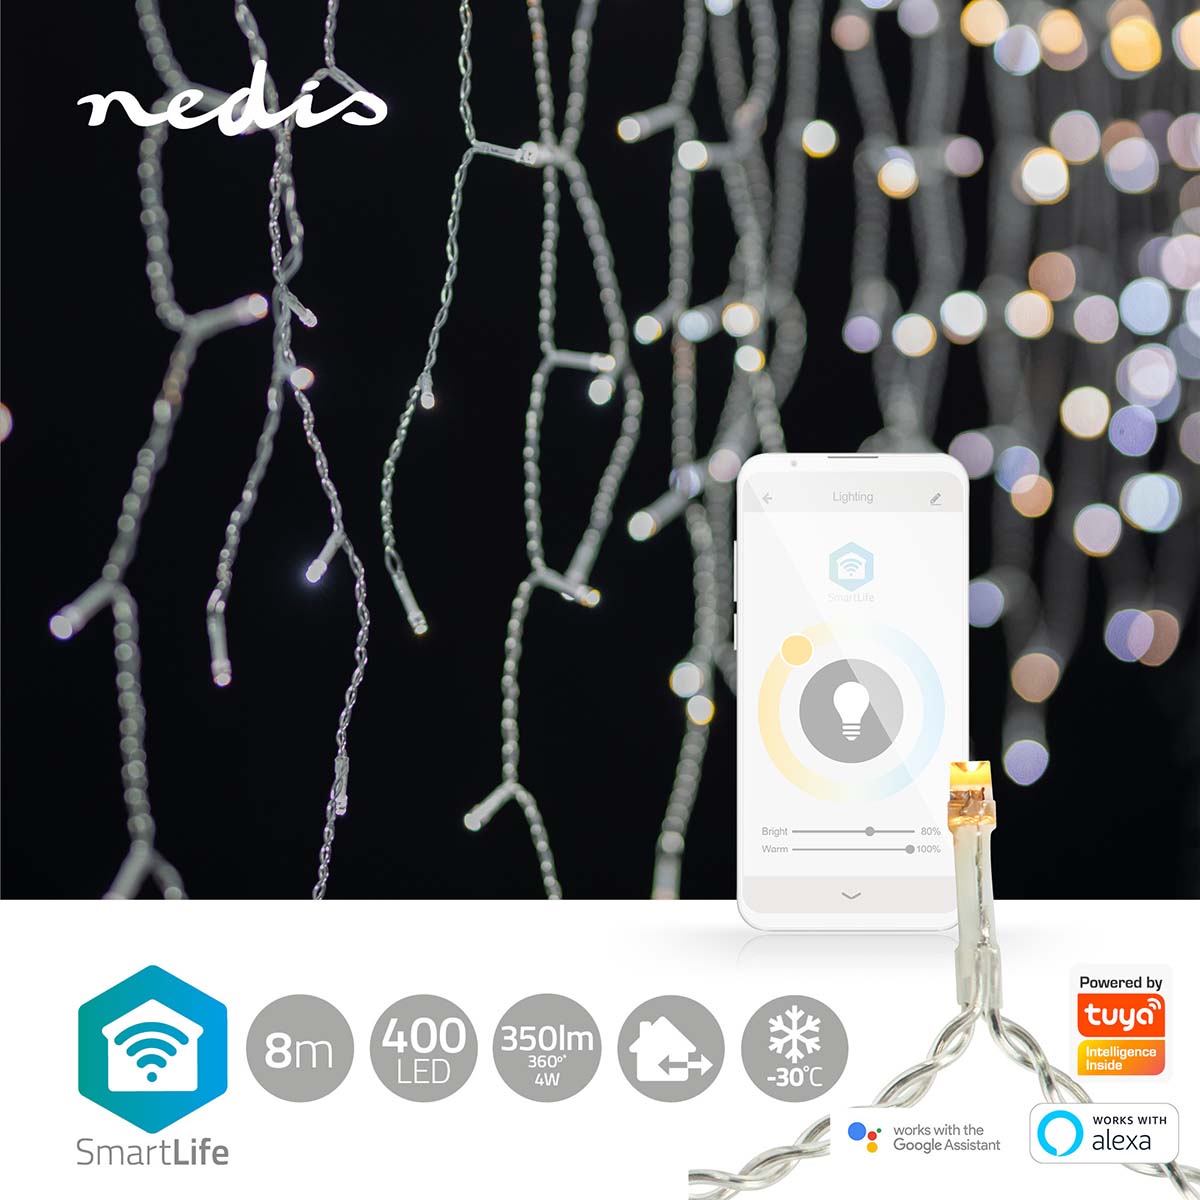 Grinalda Nedis de 8m, 400 LEDs quente/frio: iluminação de Natal inteligente em 80 gotas, proporcionando charme versátil.